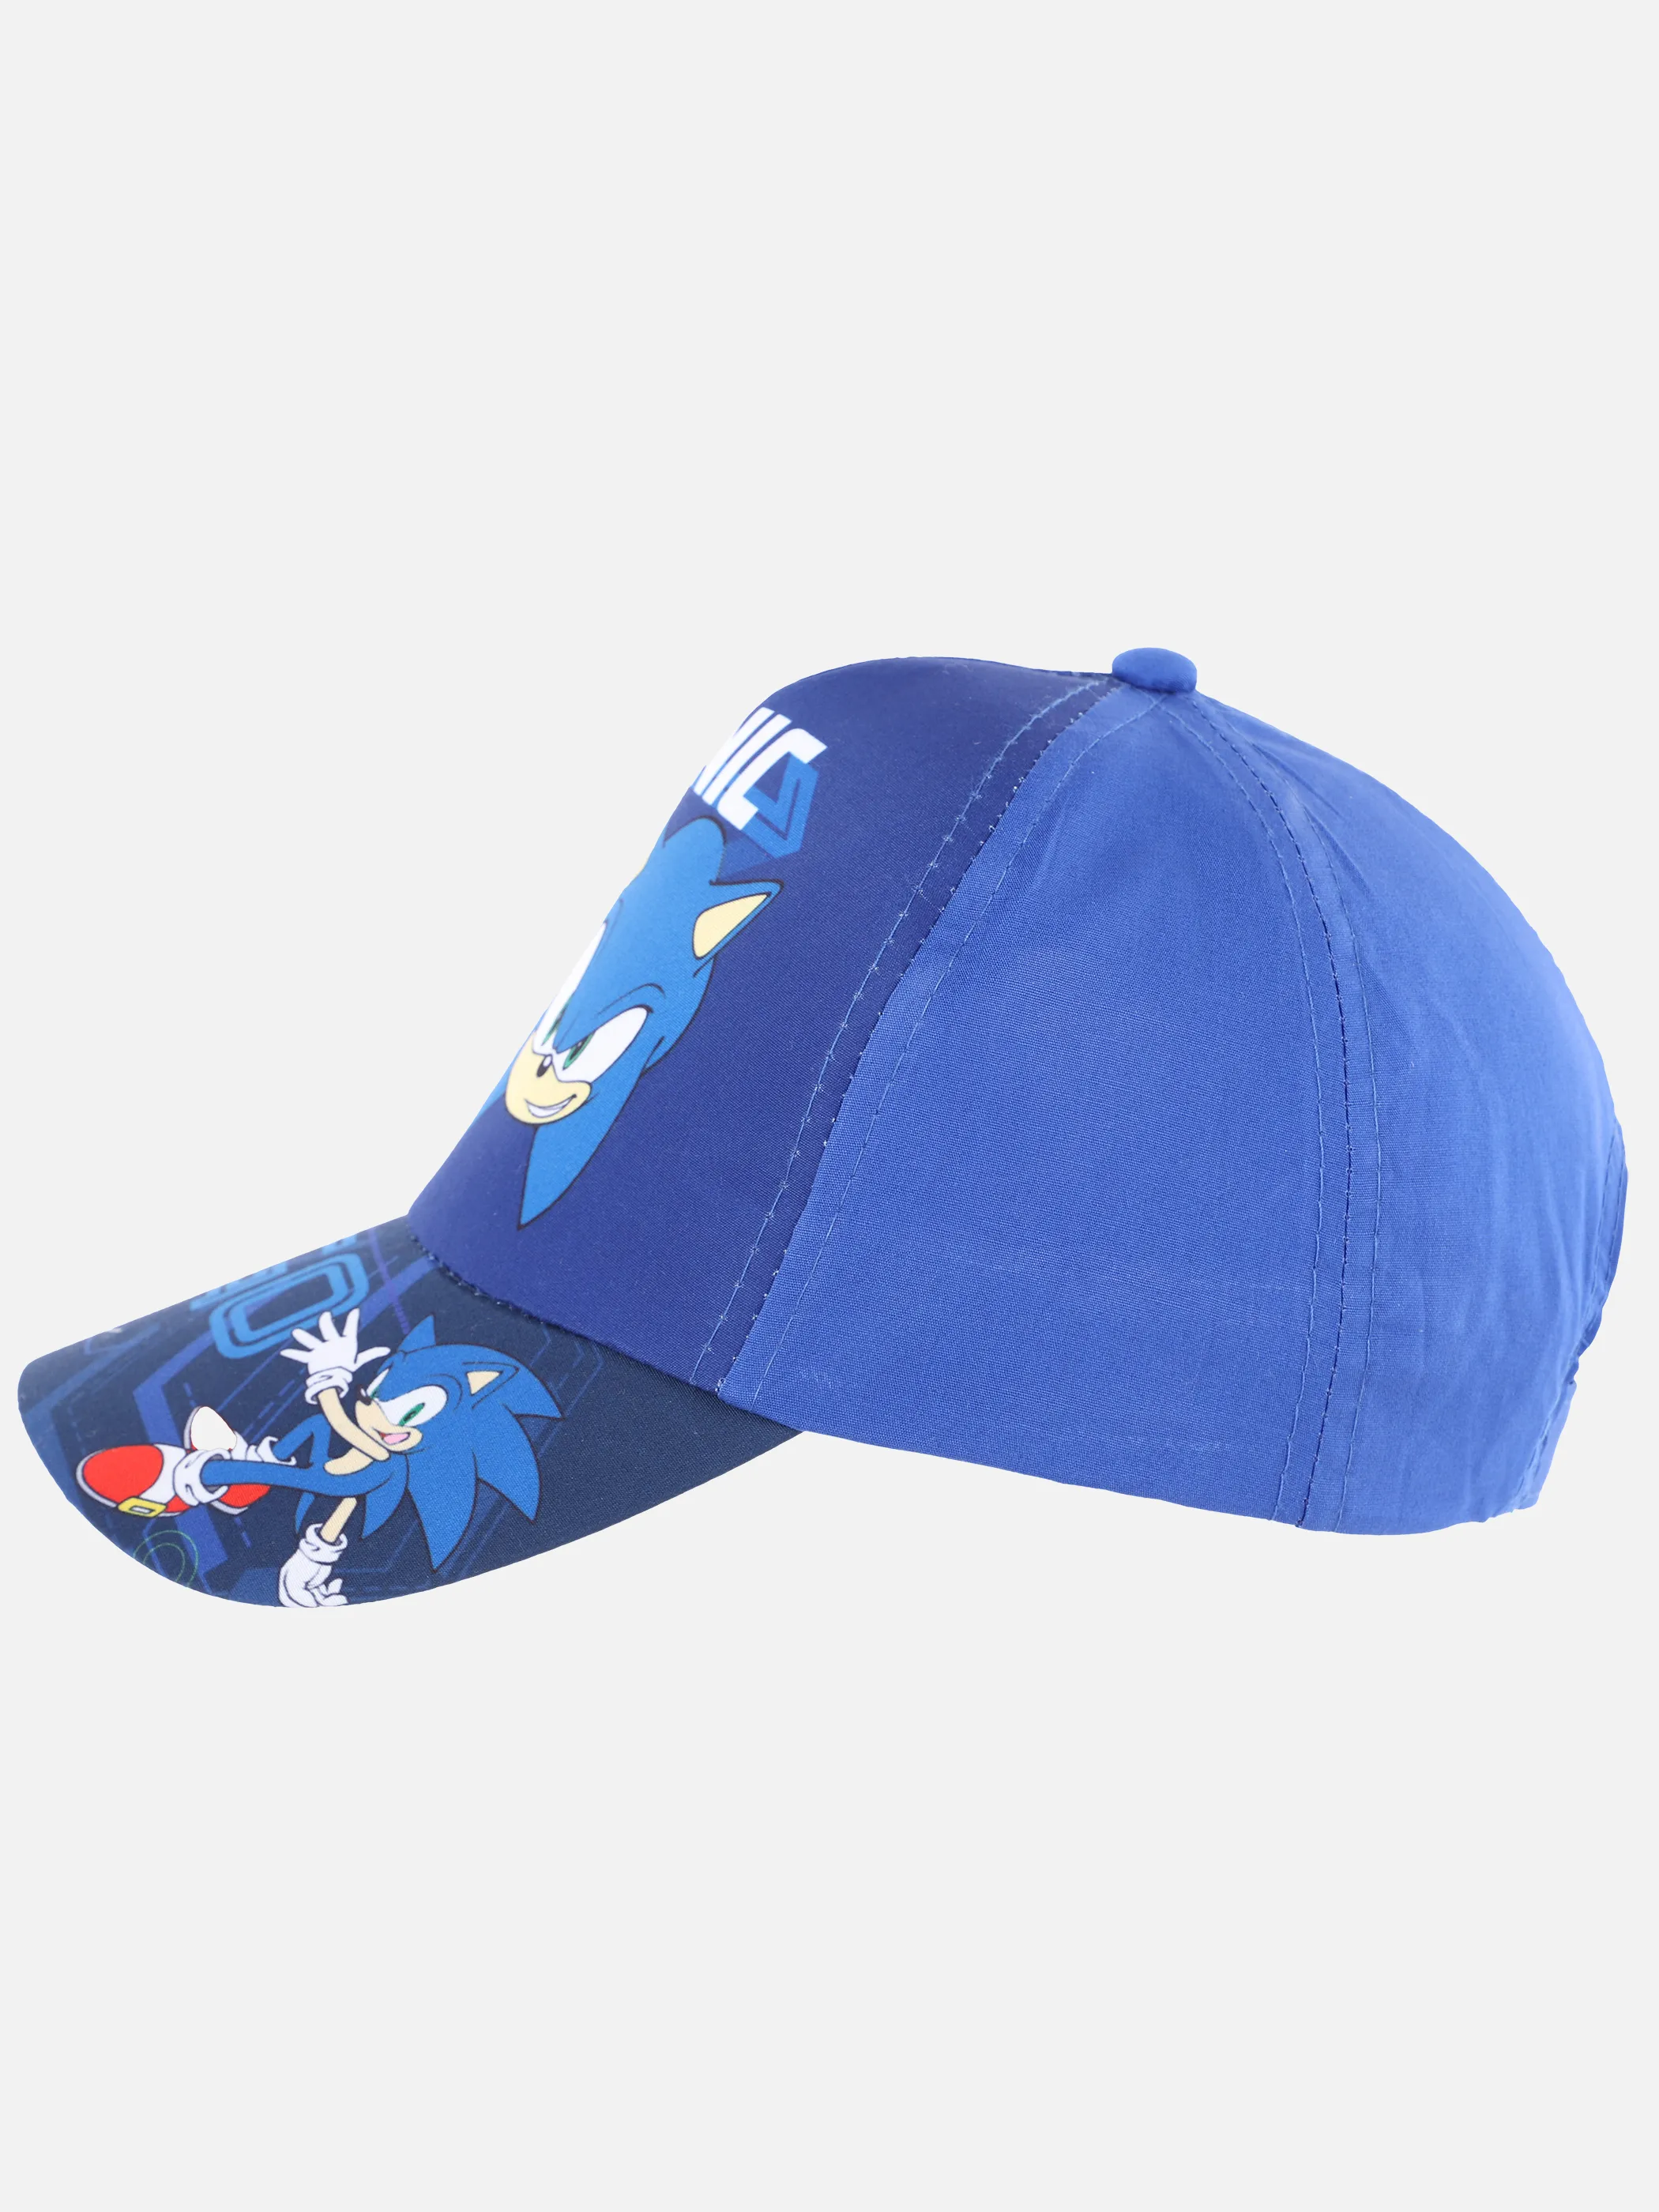 Sonic KJ Cap mit Sonicdruck in marine und blau Blau 892561 BLAU 2